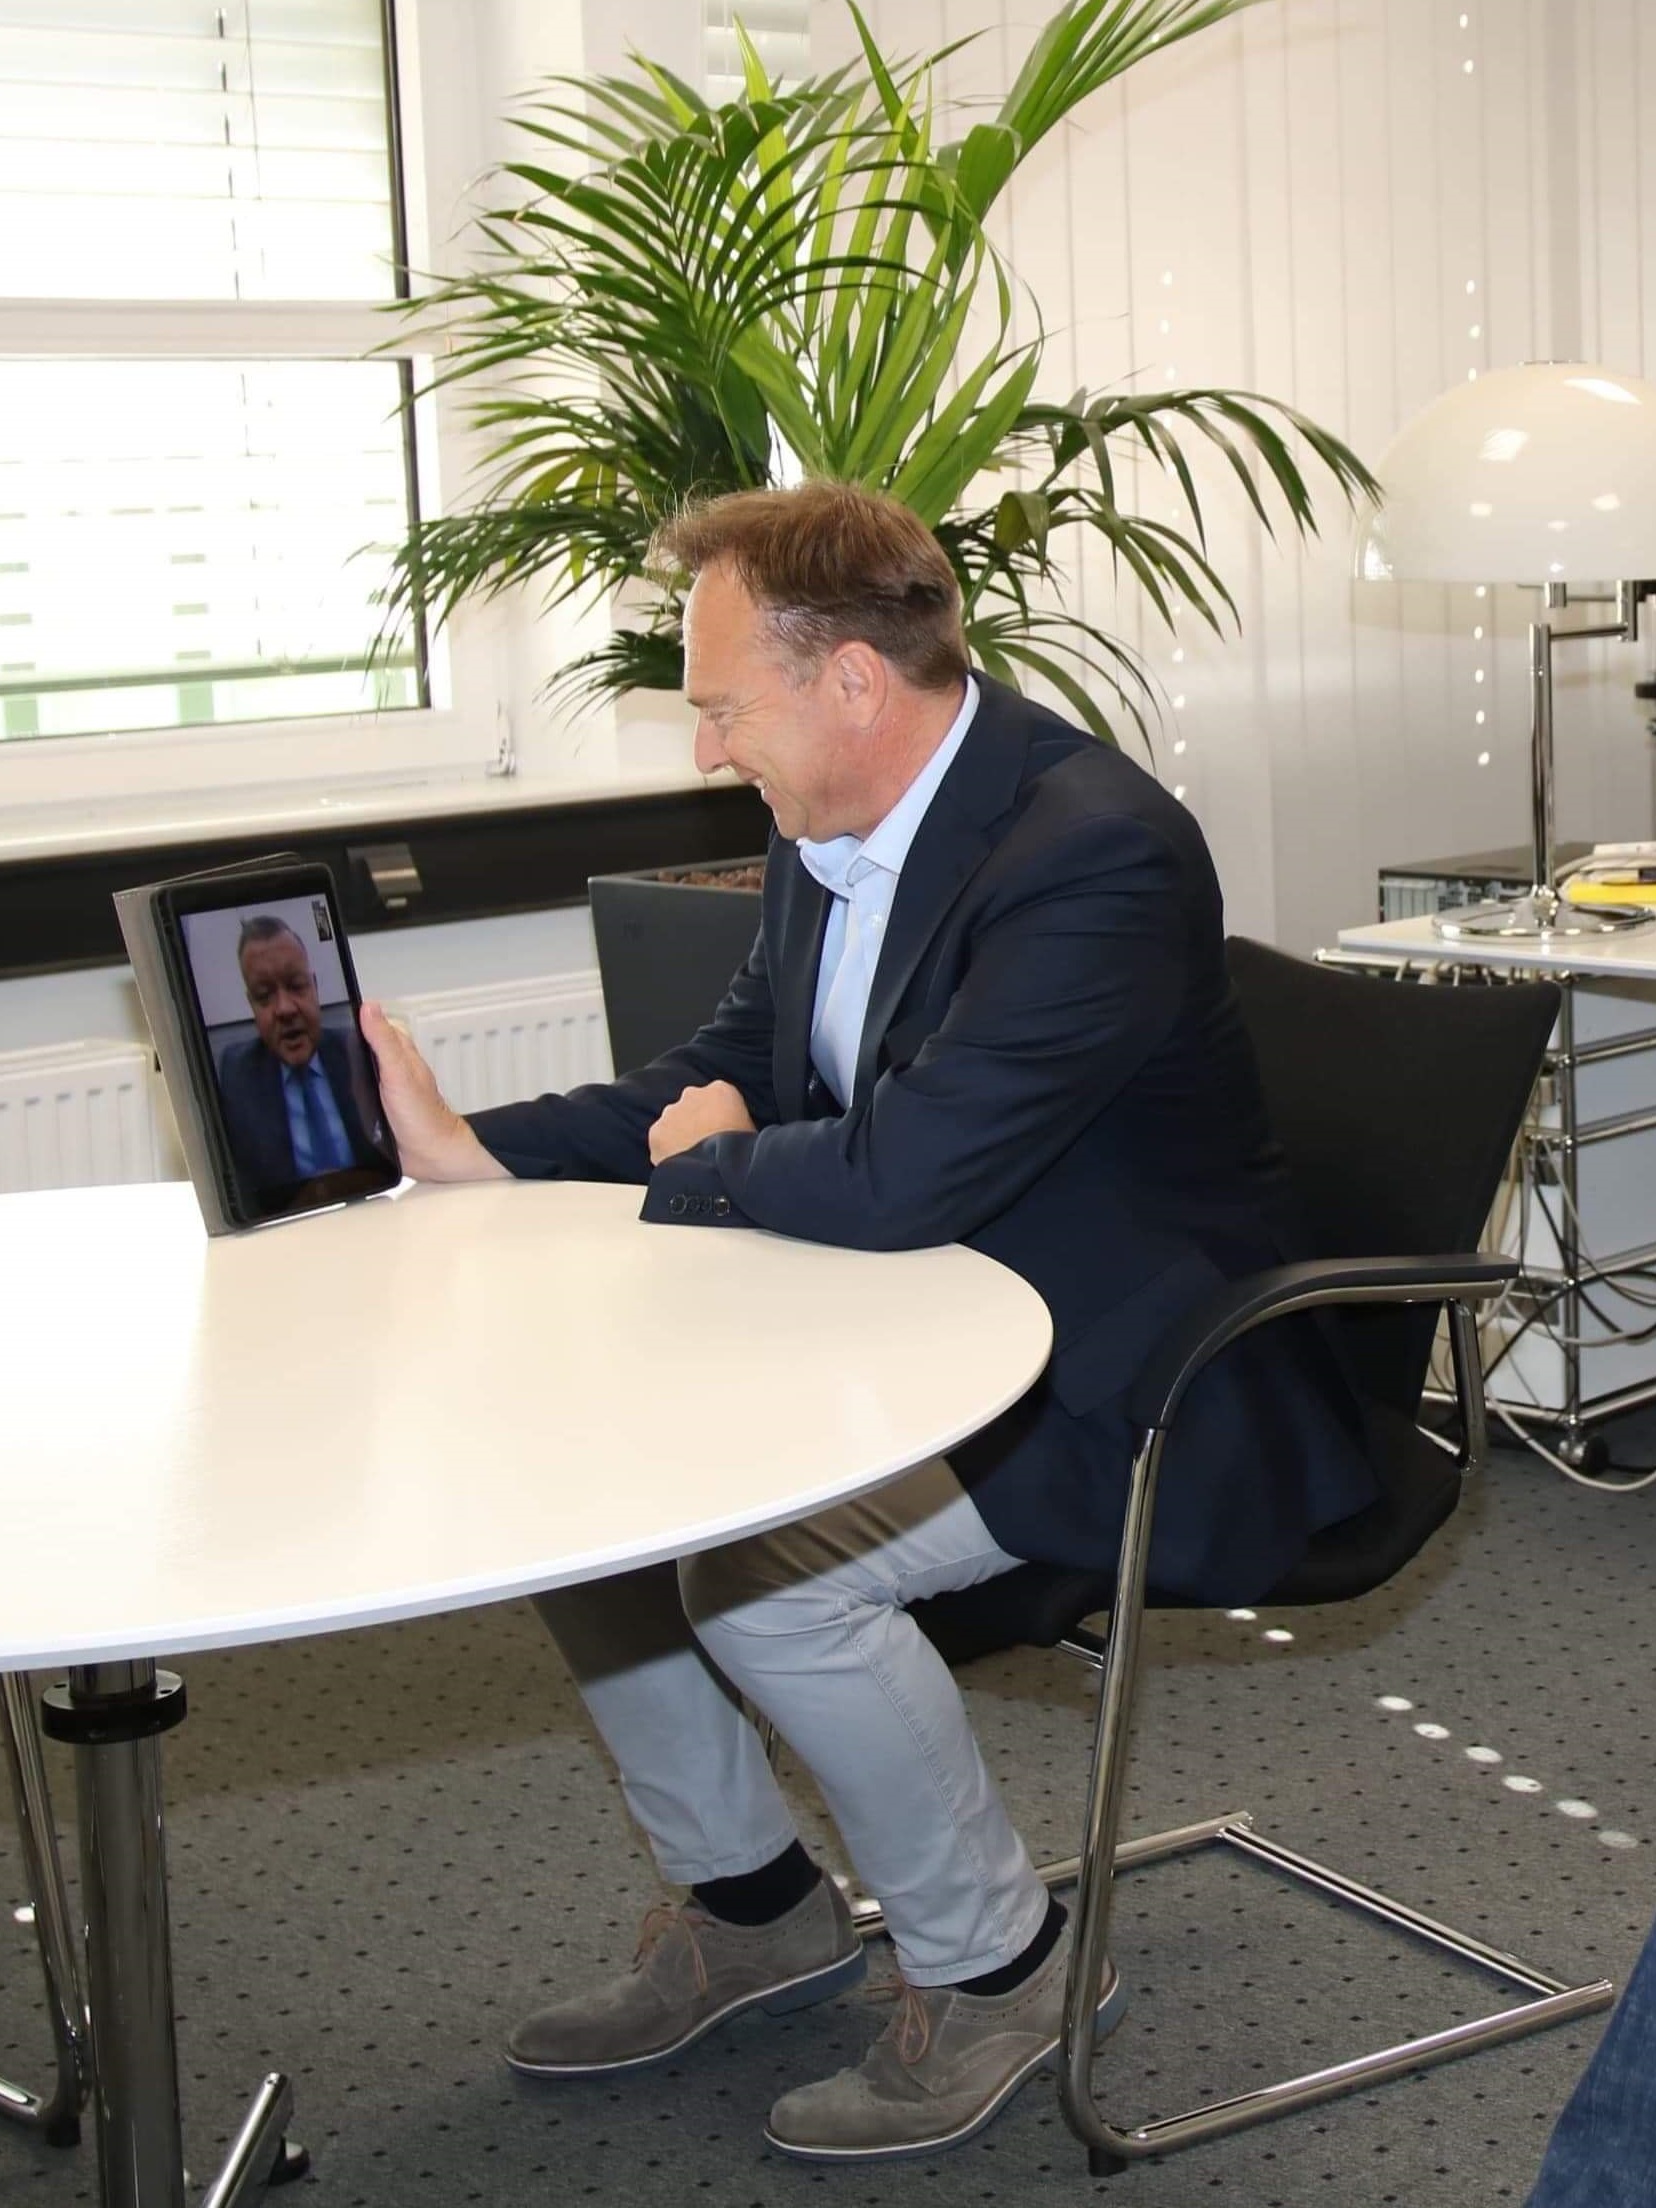 Na zdjęciu widać starostę Kai Zwickera siedzącego przy stole z tabletem w ręku, prze który prowadzi wideokonferencję ze starostą Romanem Potockim